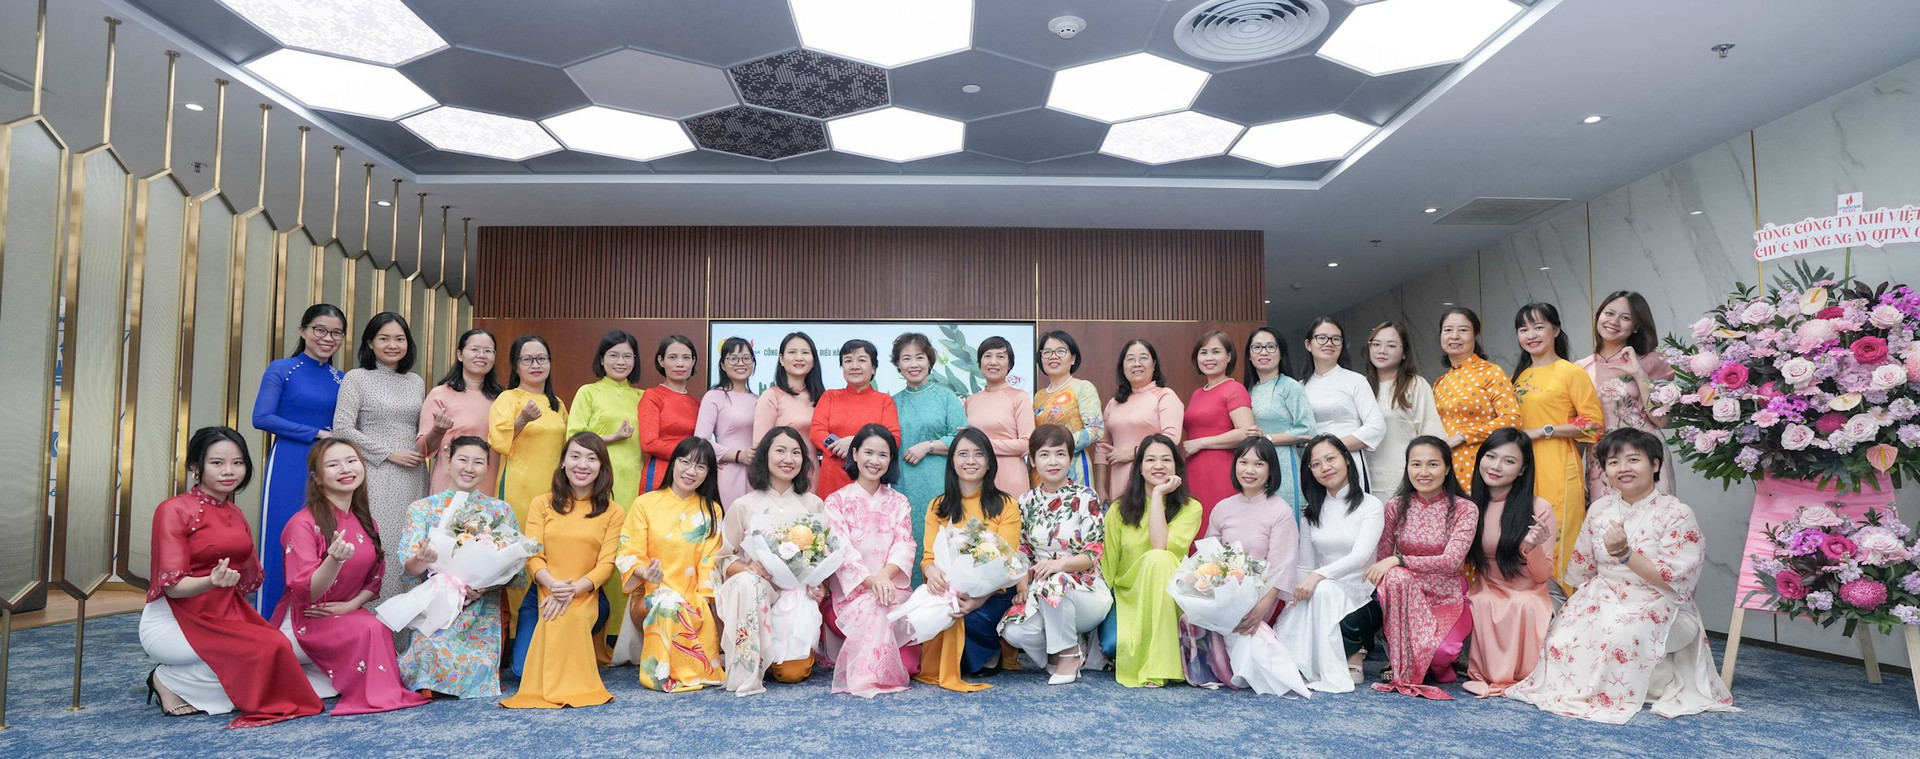 Ban Nữ công Công đoàn PV GAS gửi tặng gần 500 bộ áo dài nhân tháng 3 yêu thương